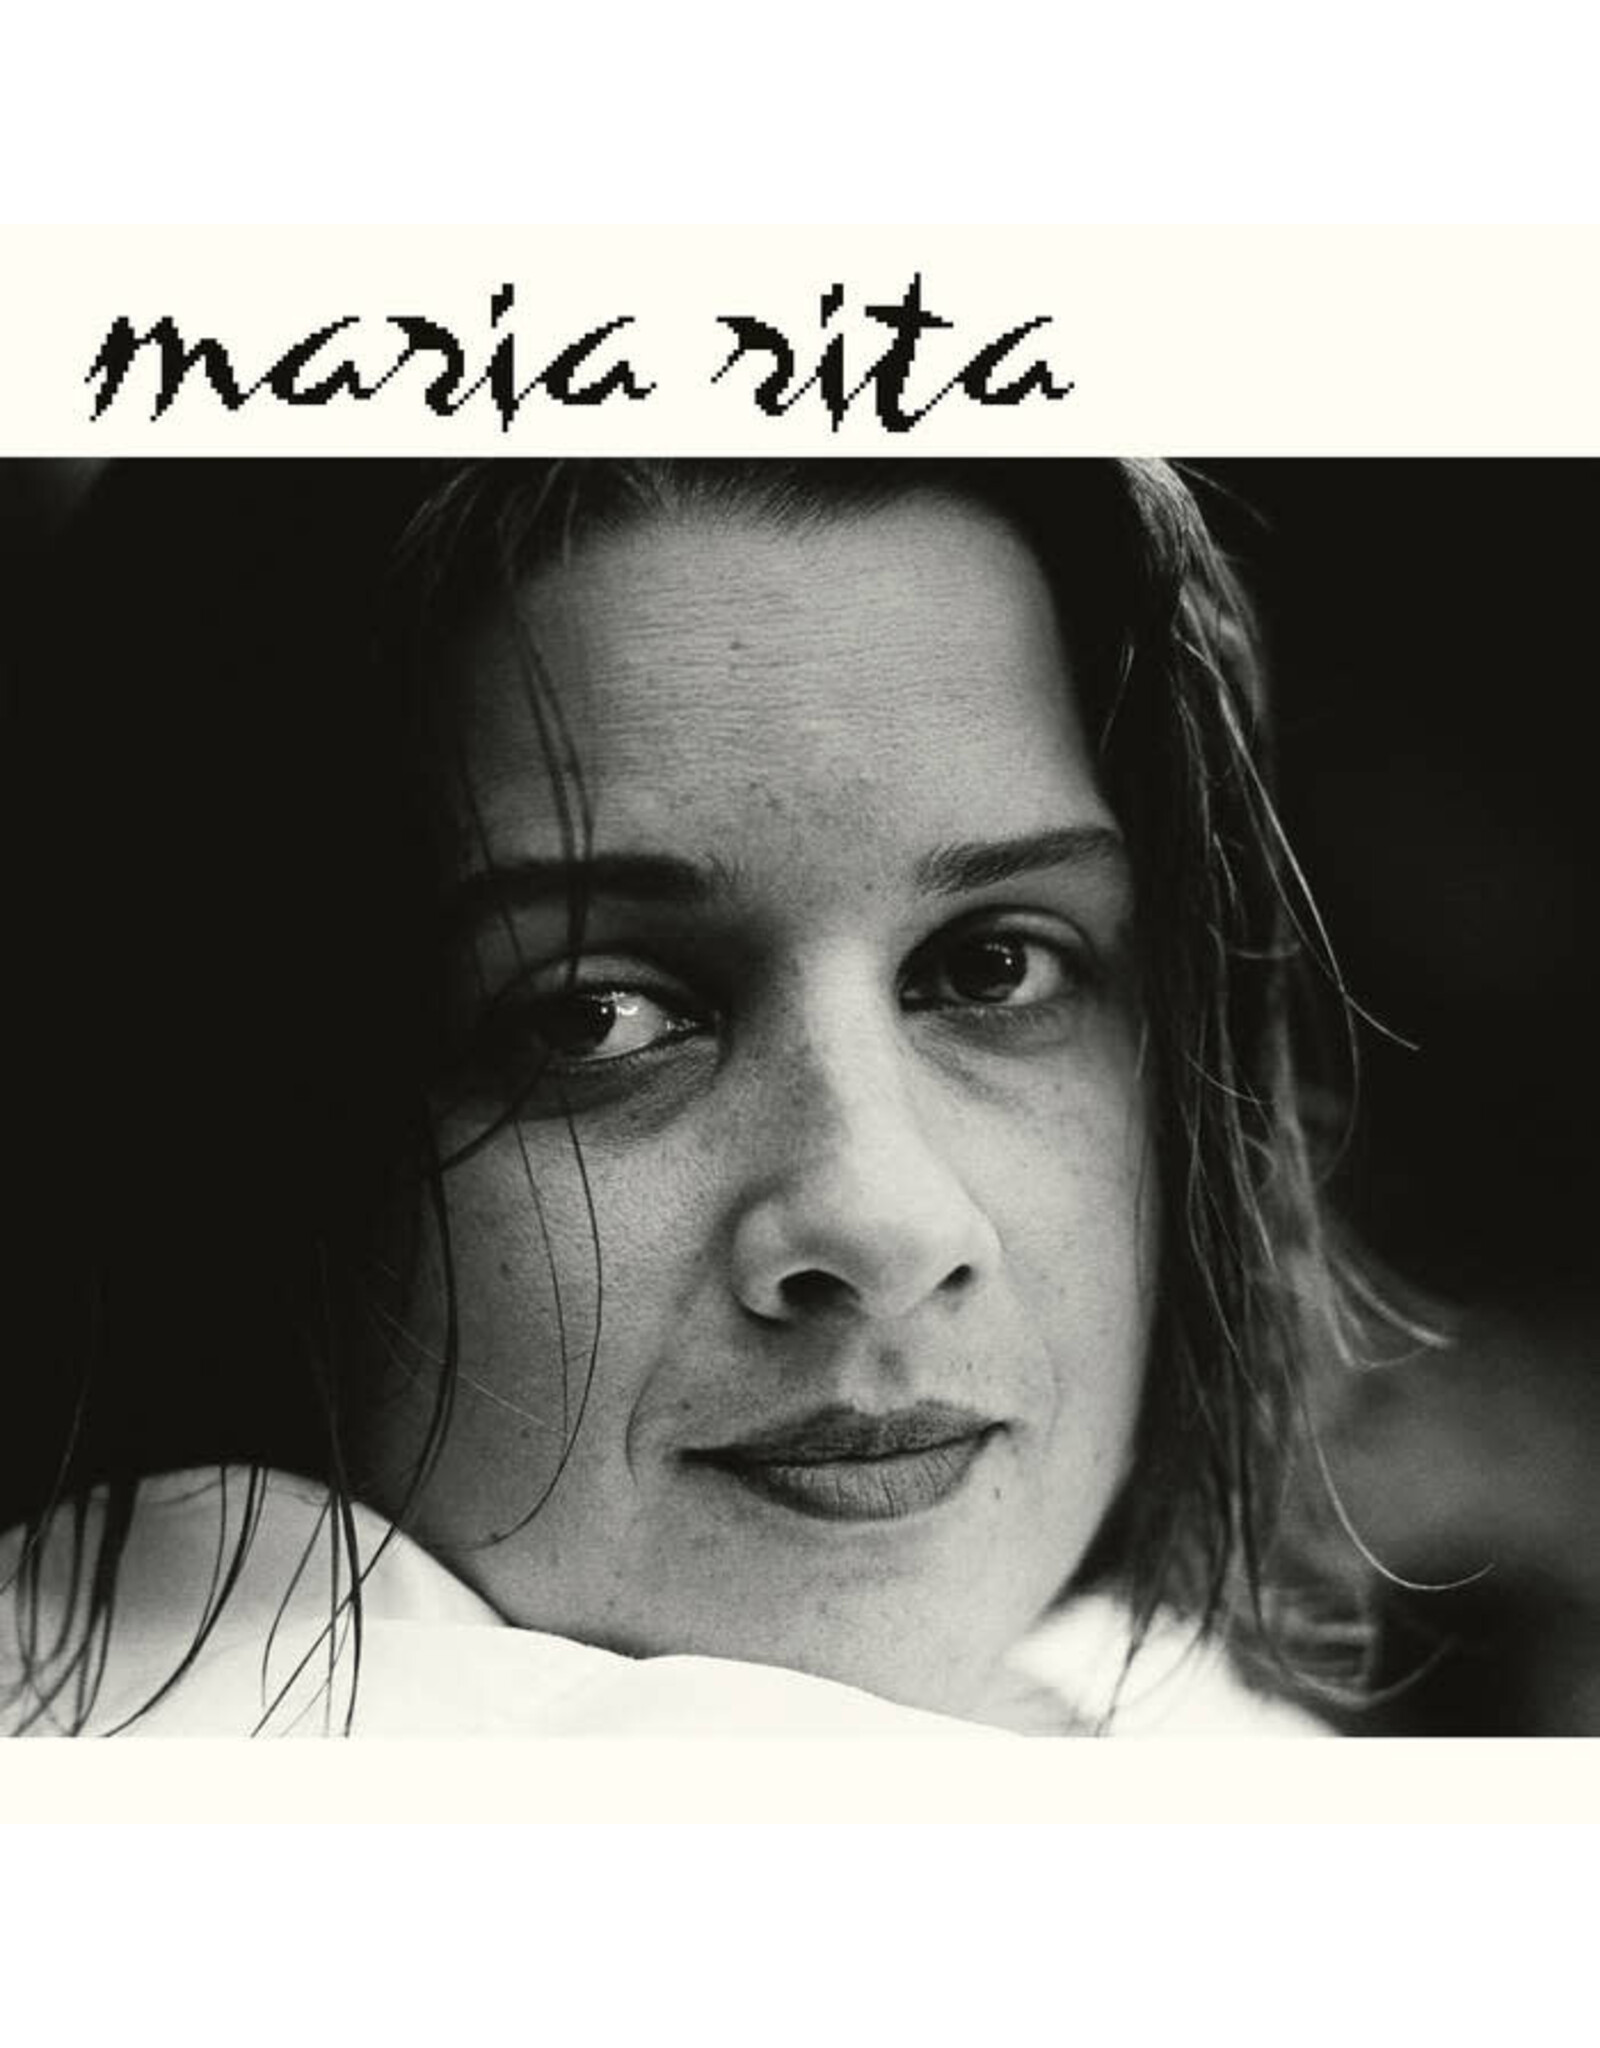 Mr. Bongo Rita, Maria: Brasileira LP